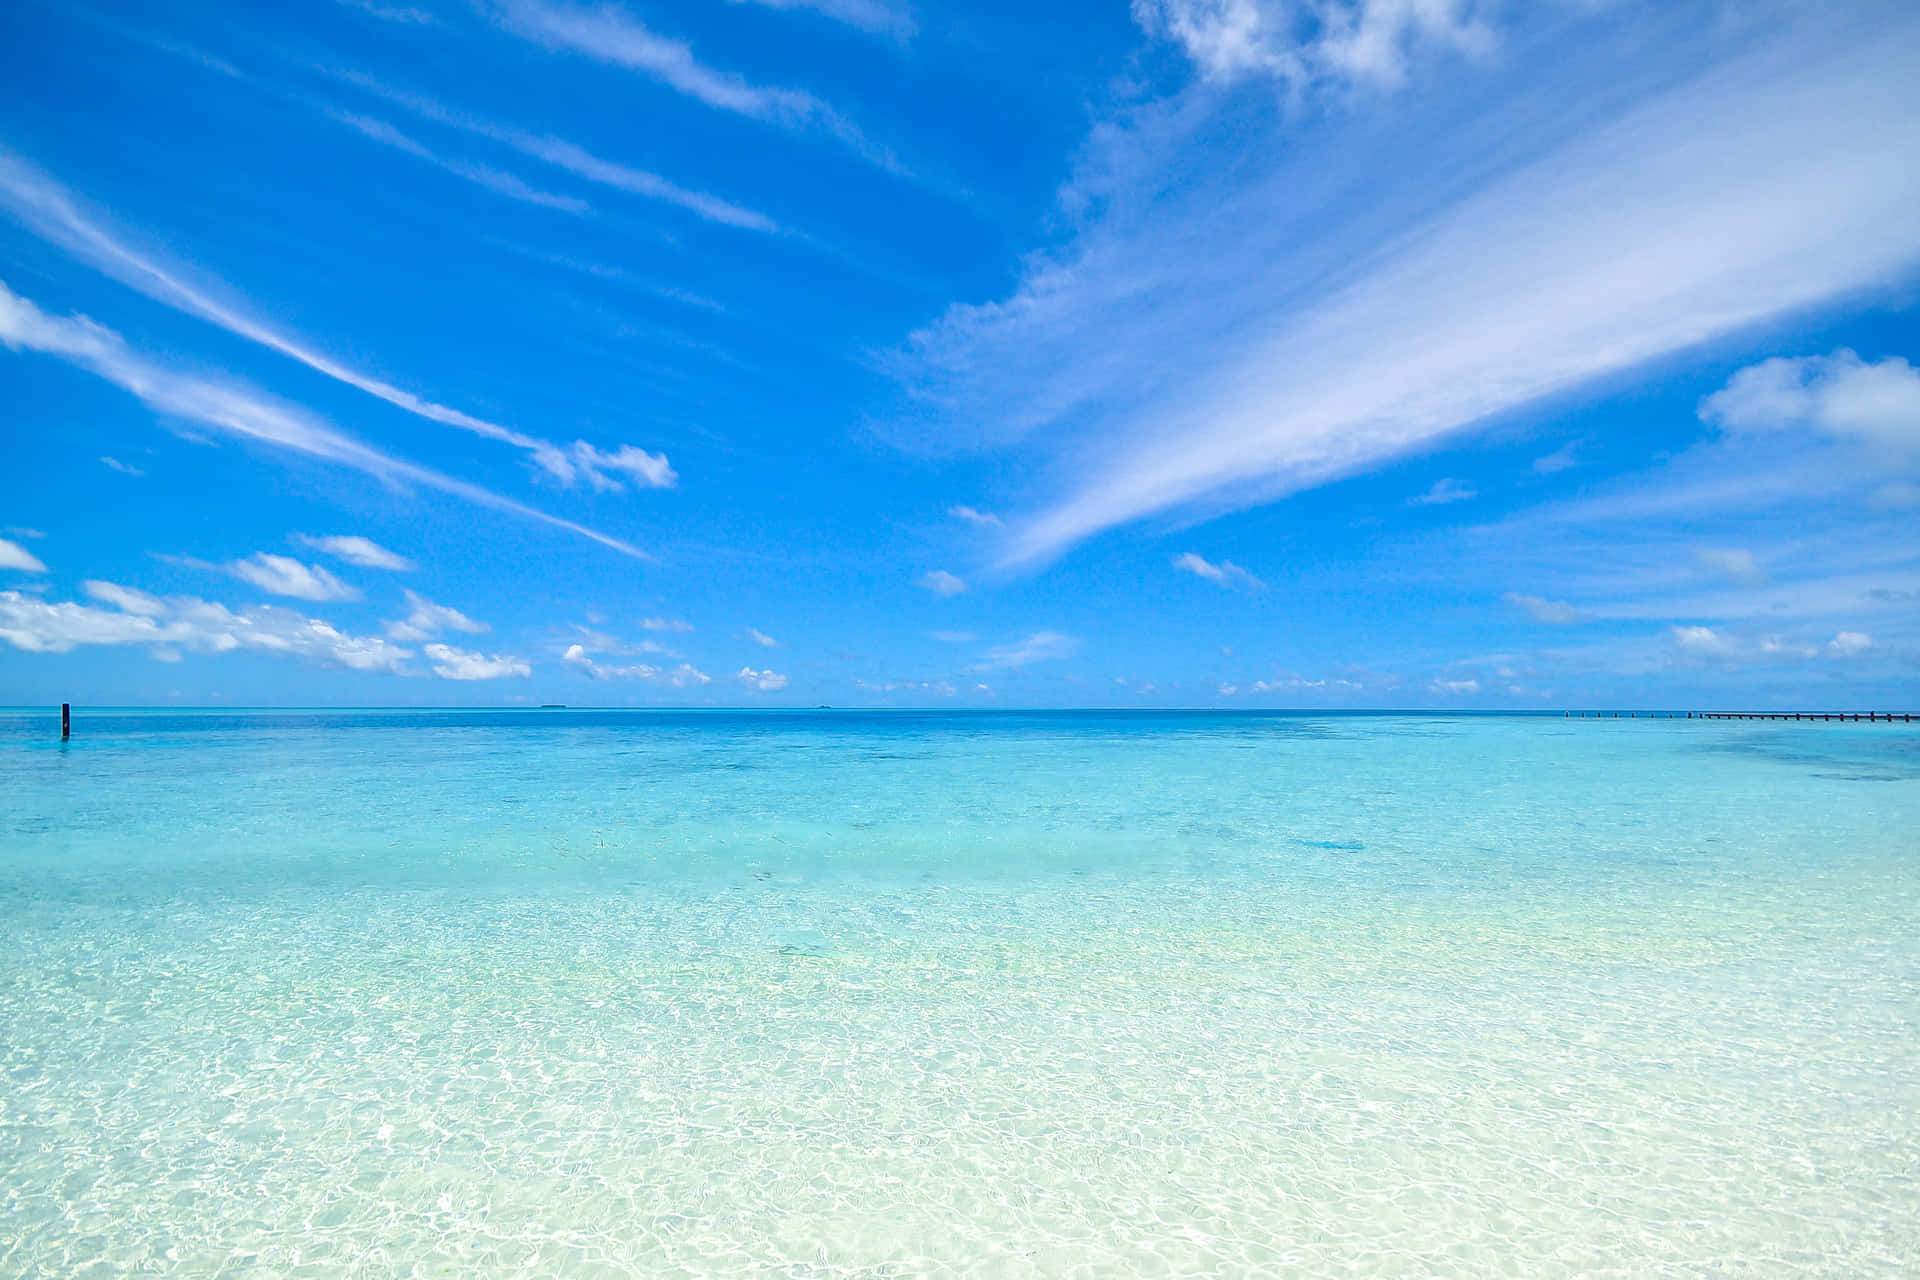 Erhaschensie Einen Blick Auf Atemberaubende Schönheit Mit Einem Ruhigen Strand Und Einem Bewölkten Blauen Himmel. Wallpaper